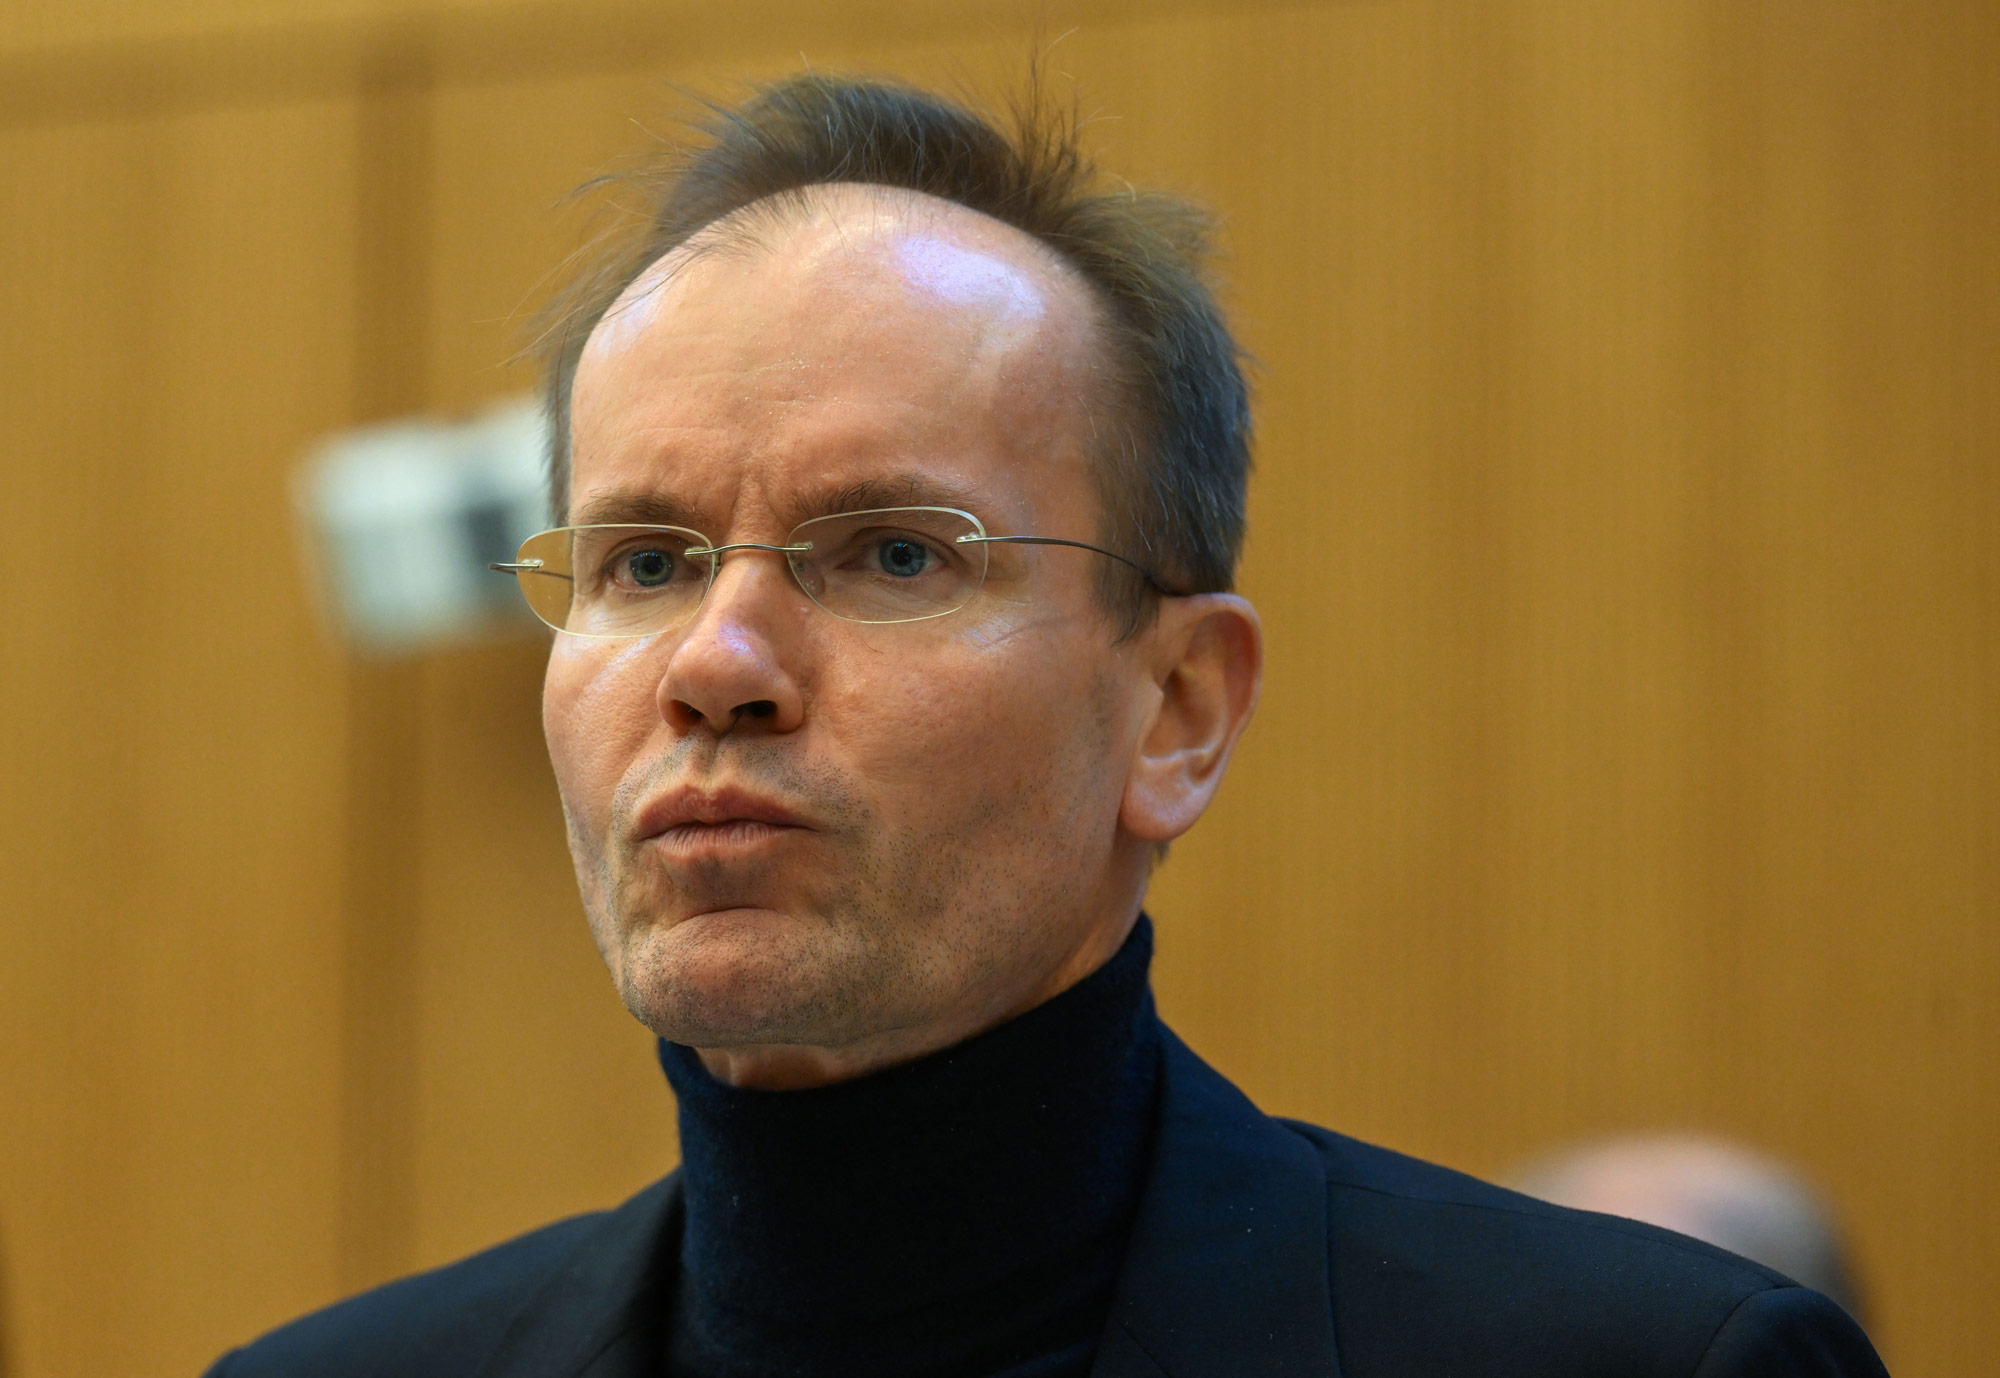 Markus Braun at District Court in Munich, on Dec. 8.